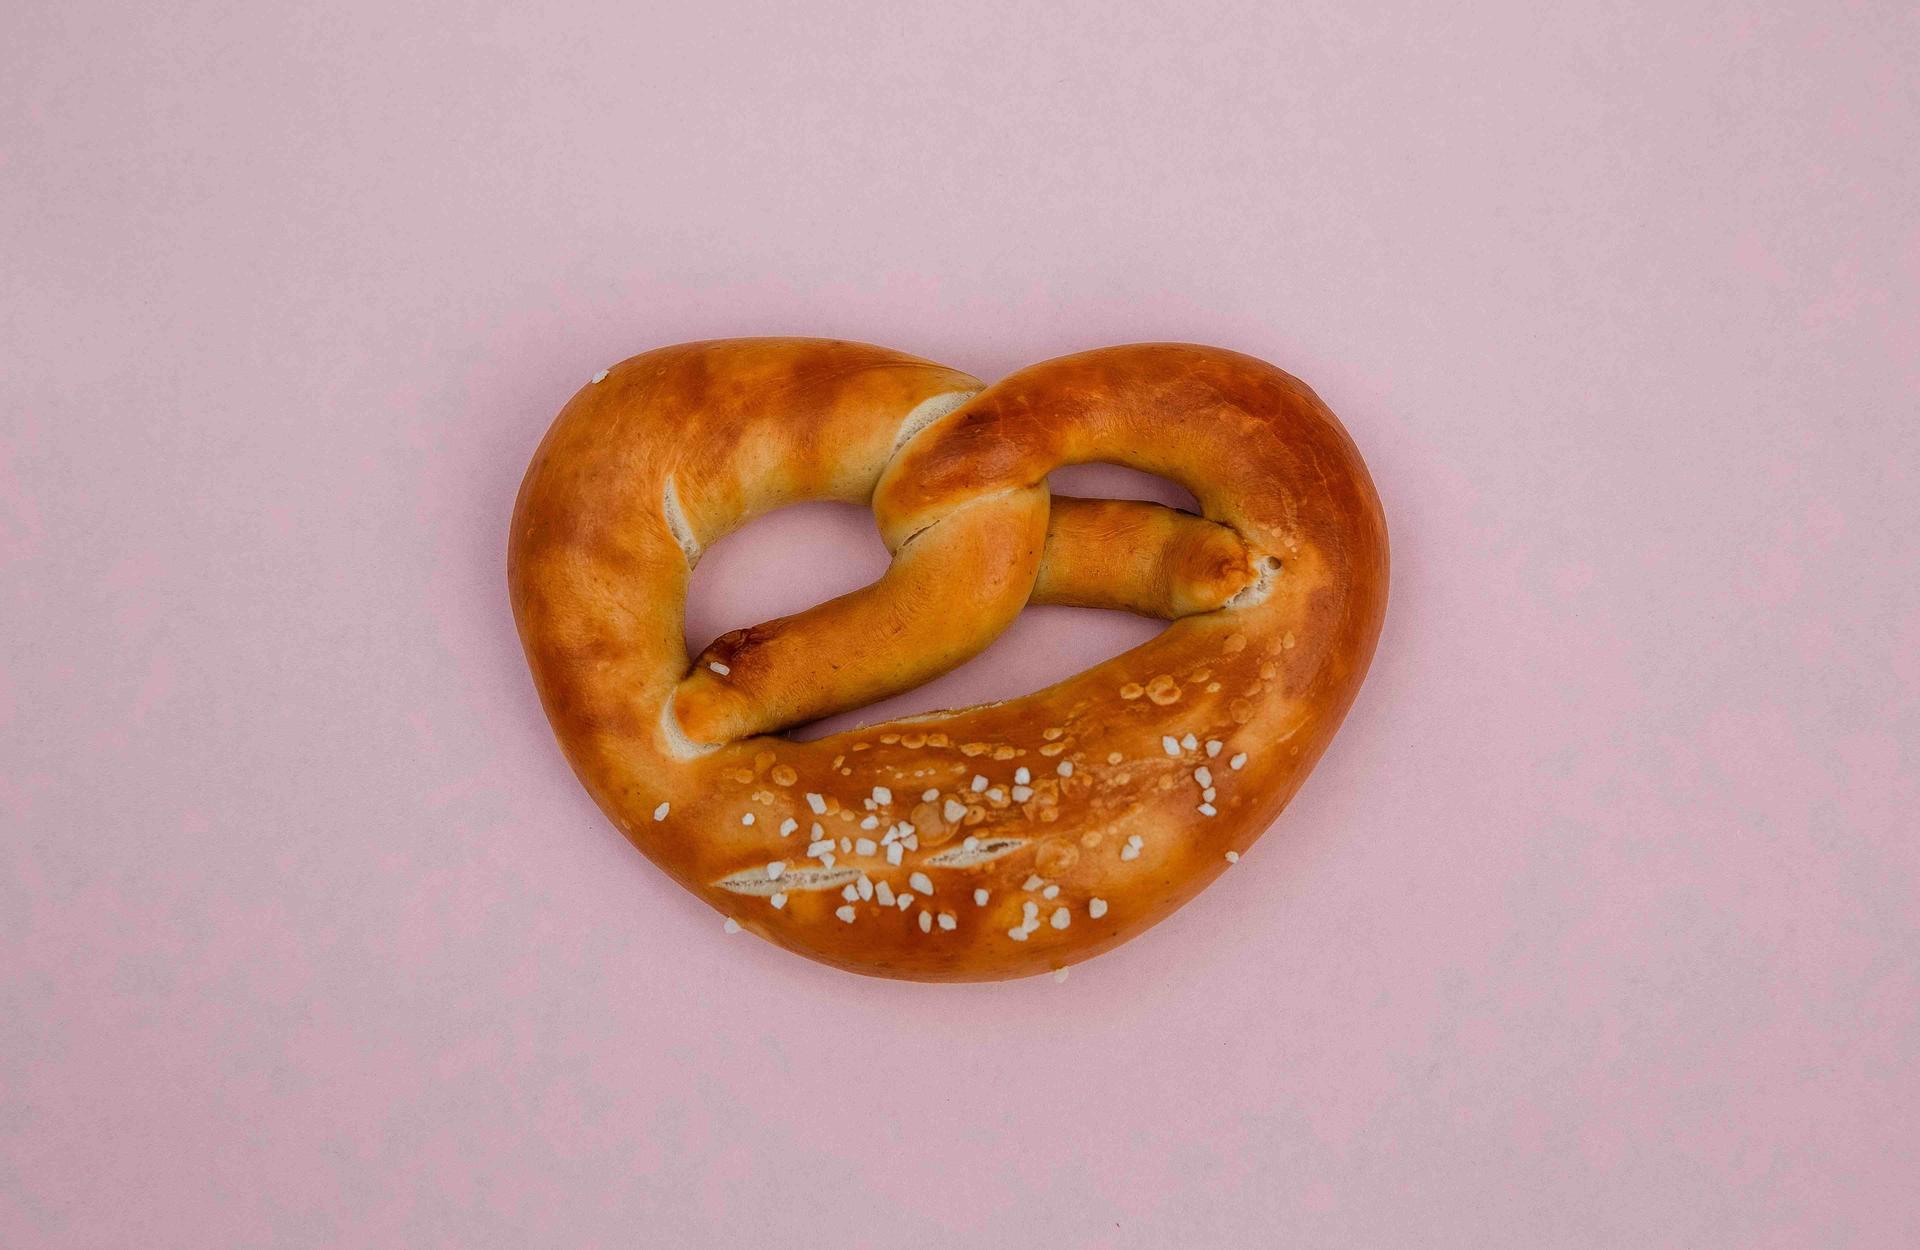 A picture of a pretzel